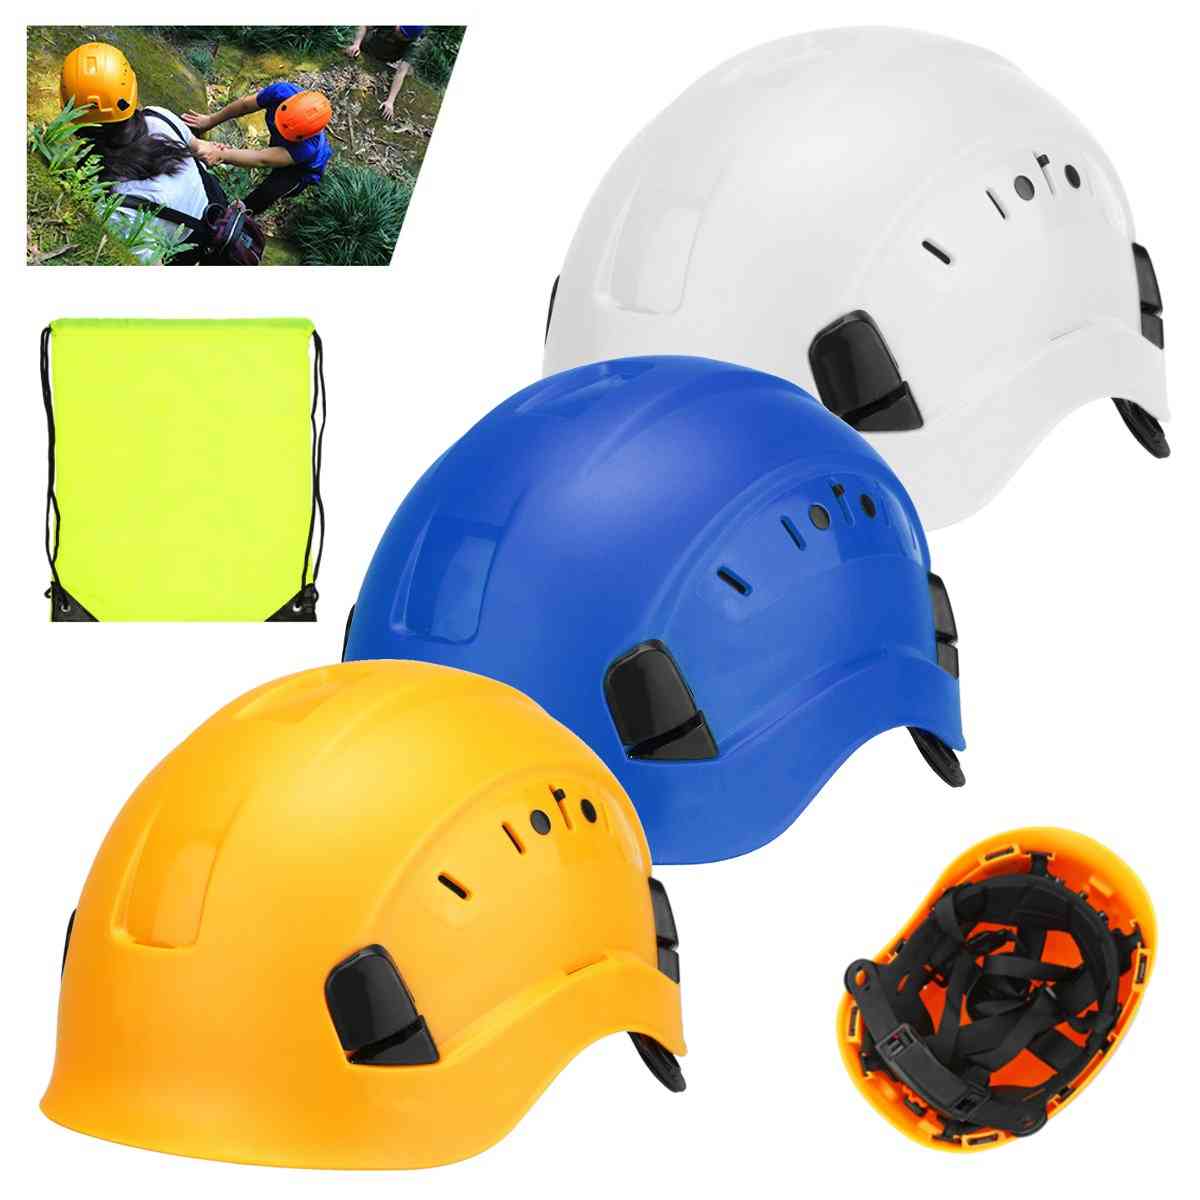 Construcción de casco de seguridad, escalada, steeplejack protector, casco